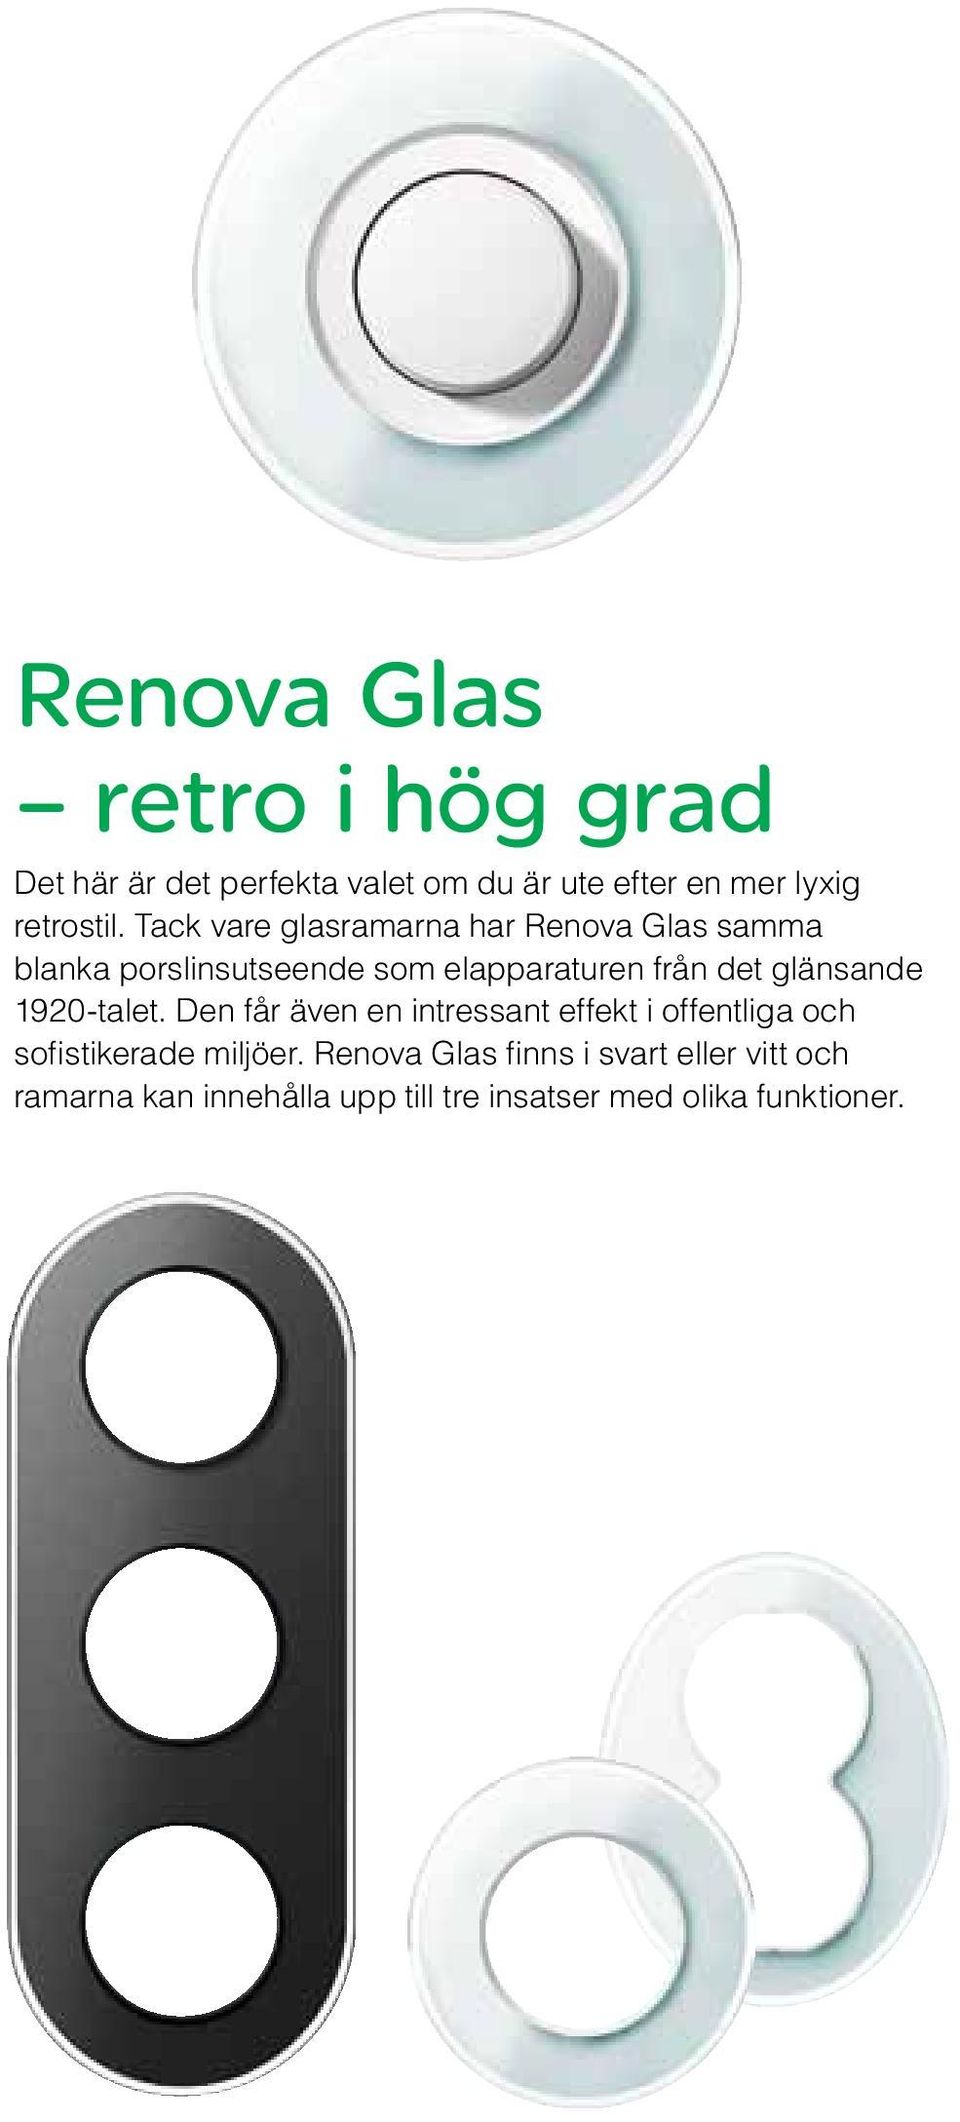 Tack vare glasramarna har Renova Glas samma blanka porslinsutseende som elapparaturen från det